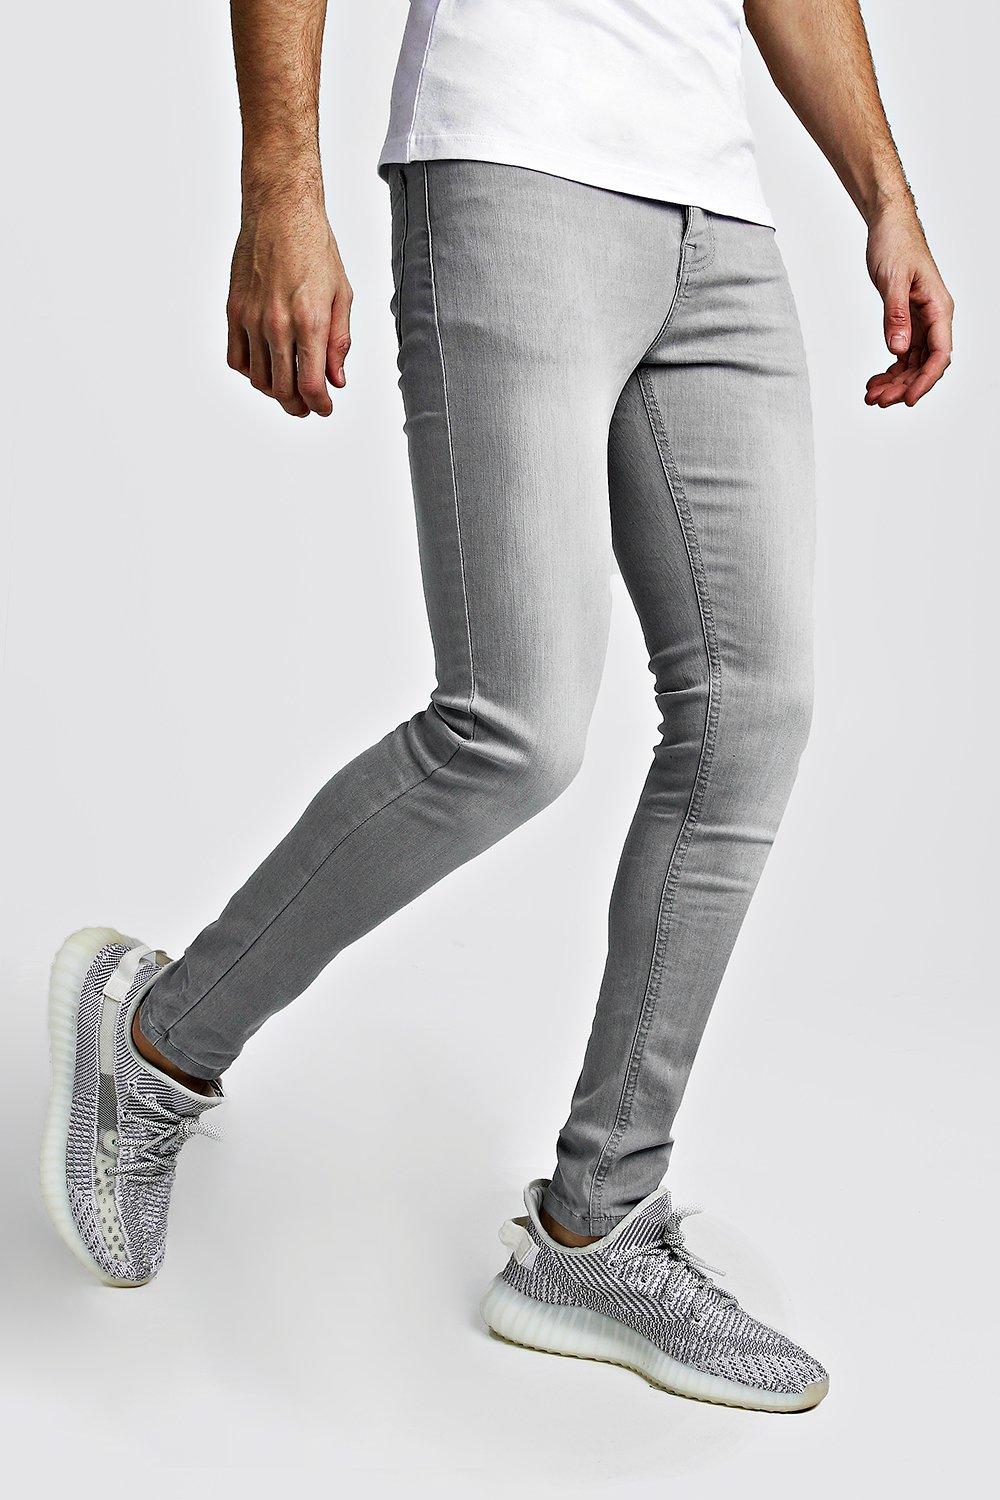 grey skinny jeans next